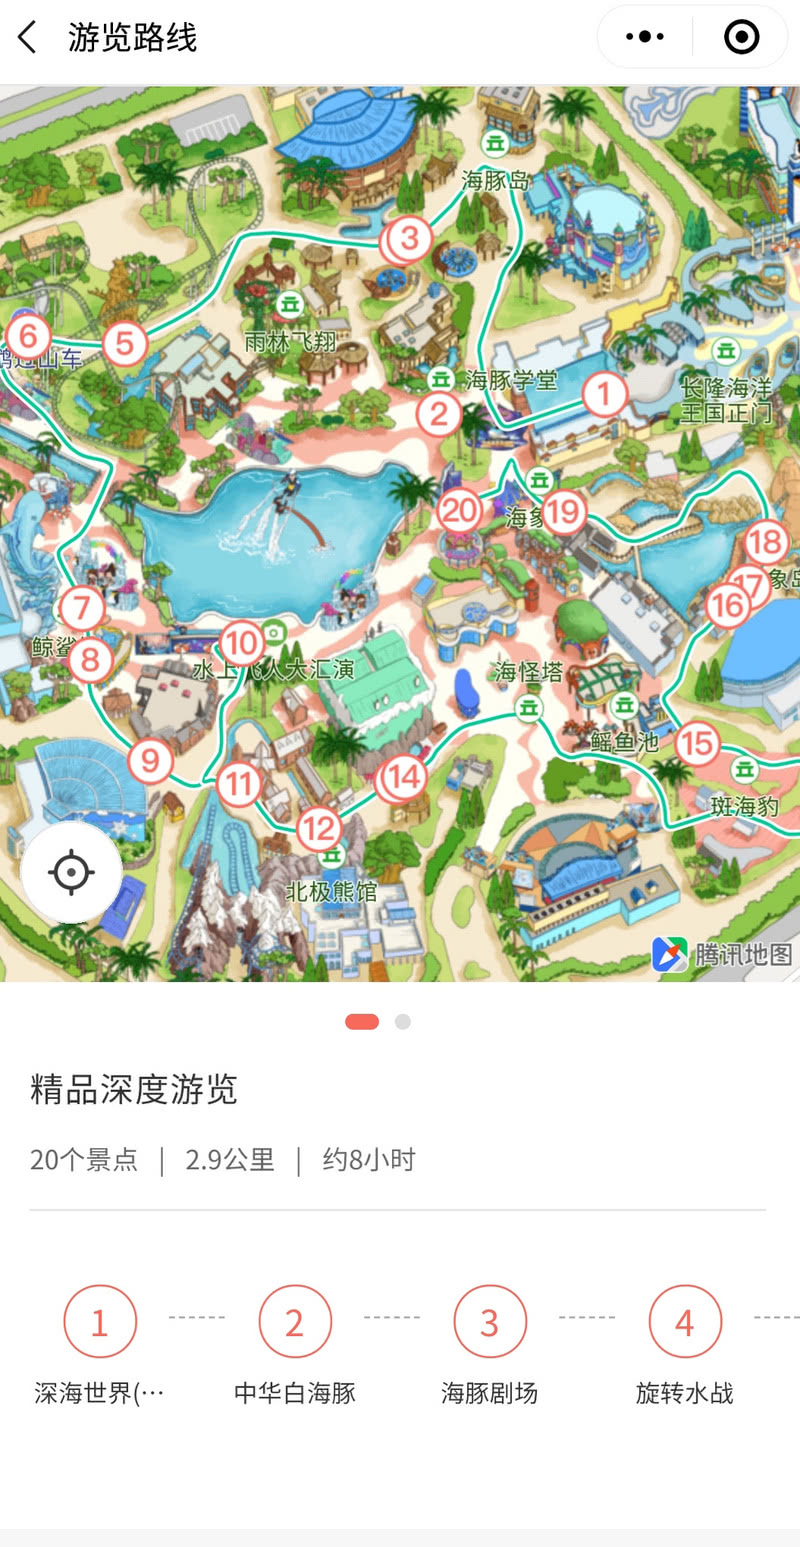 中国地图九宫格画法图片